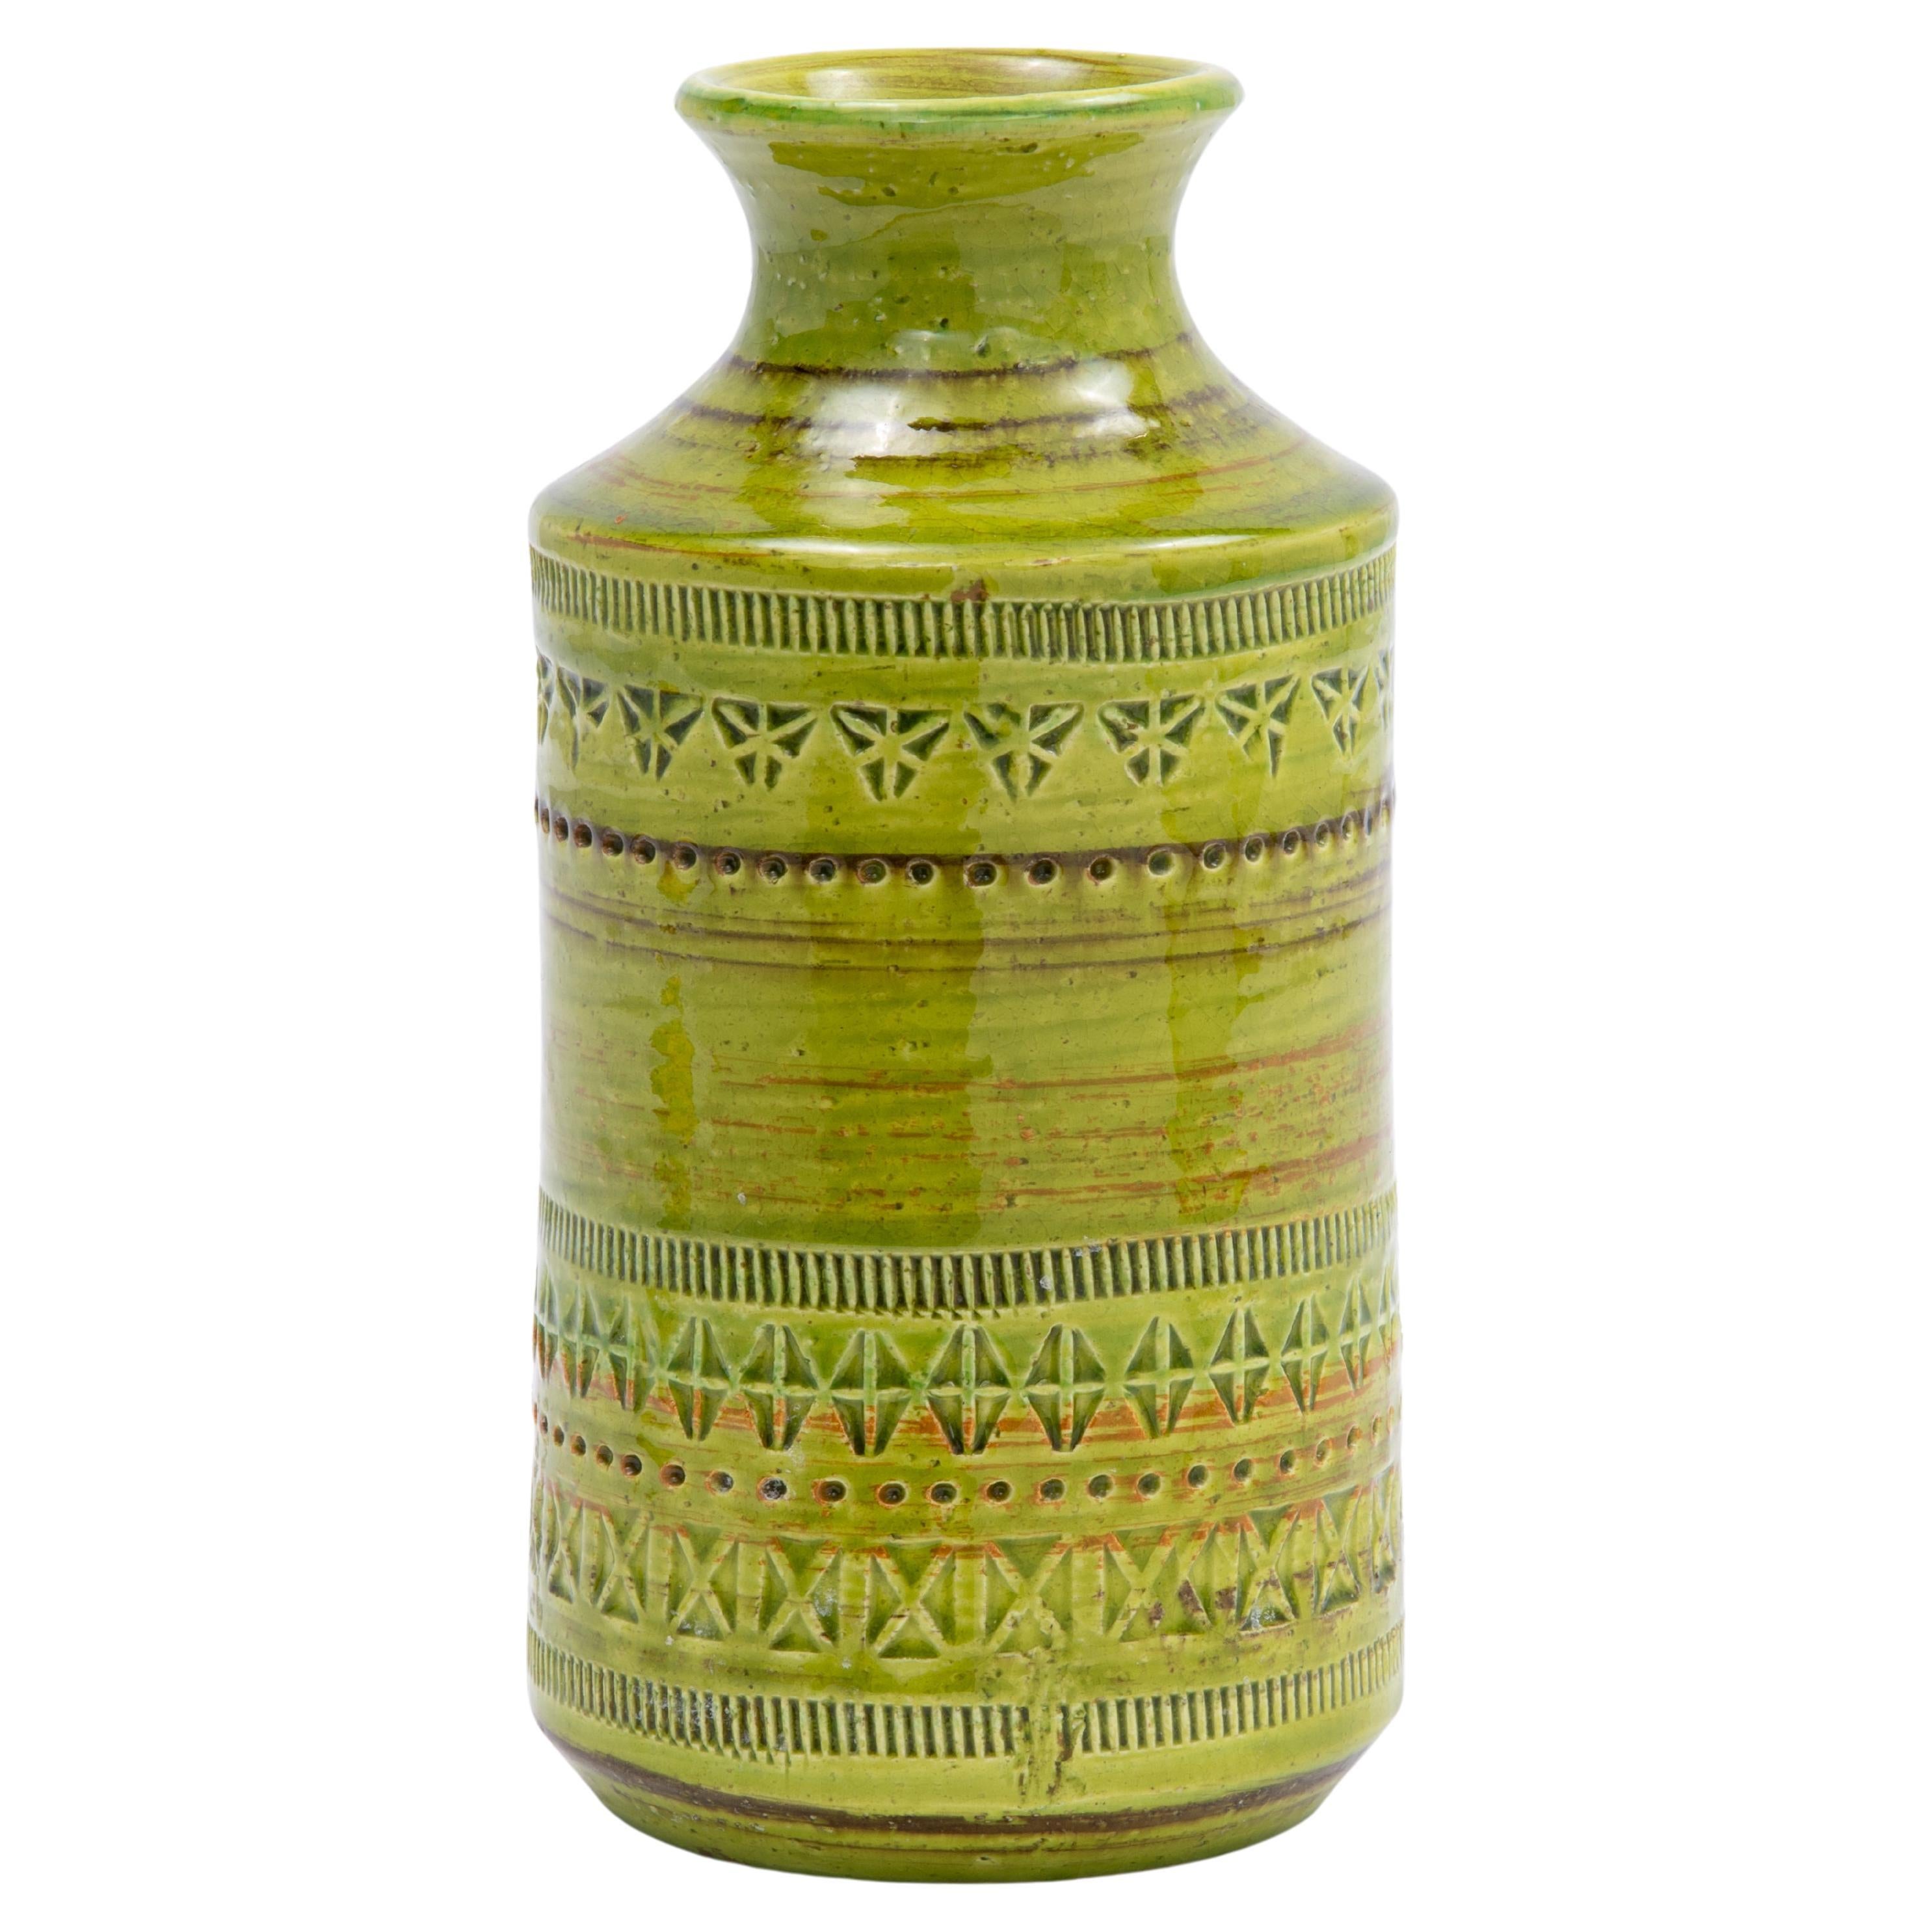 Green Aldo Londi Bitossi Rosenthal Netter Incised Vase For Sale